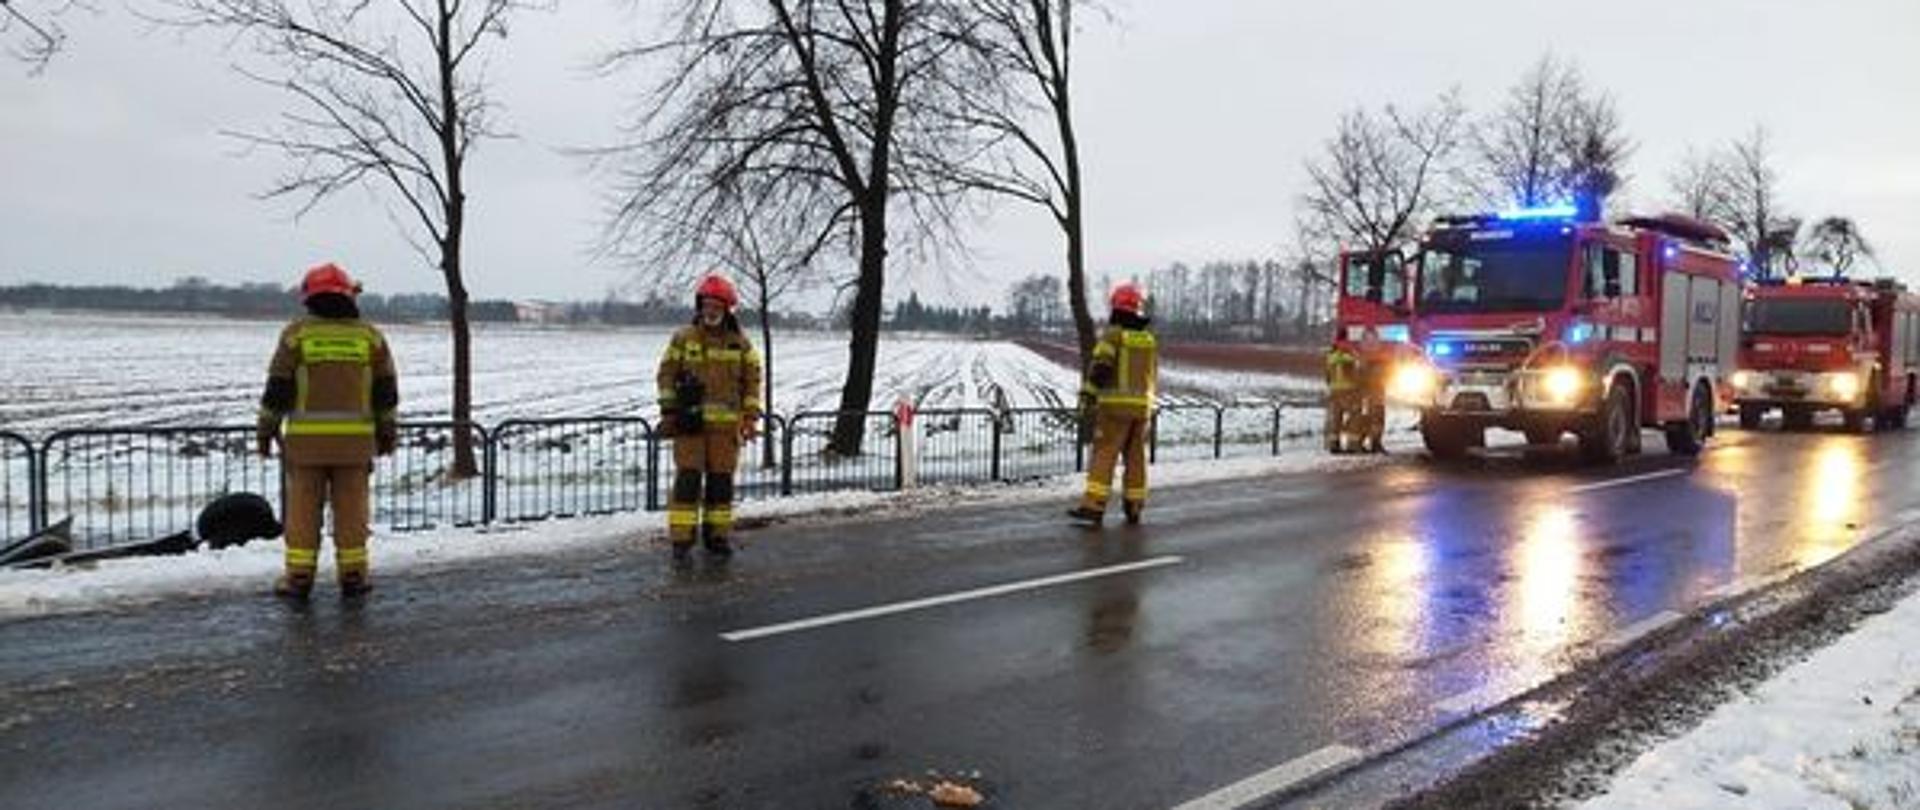 Zima, biało od śniegu na poboczu drogi. Na drodze z prawej strony stoją dwa samochody strażackie na światłach, na drodze stoi trzech strażaków w jasnych mundurach i jasnych hełmach.